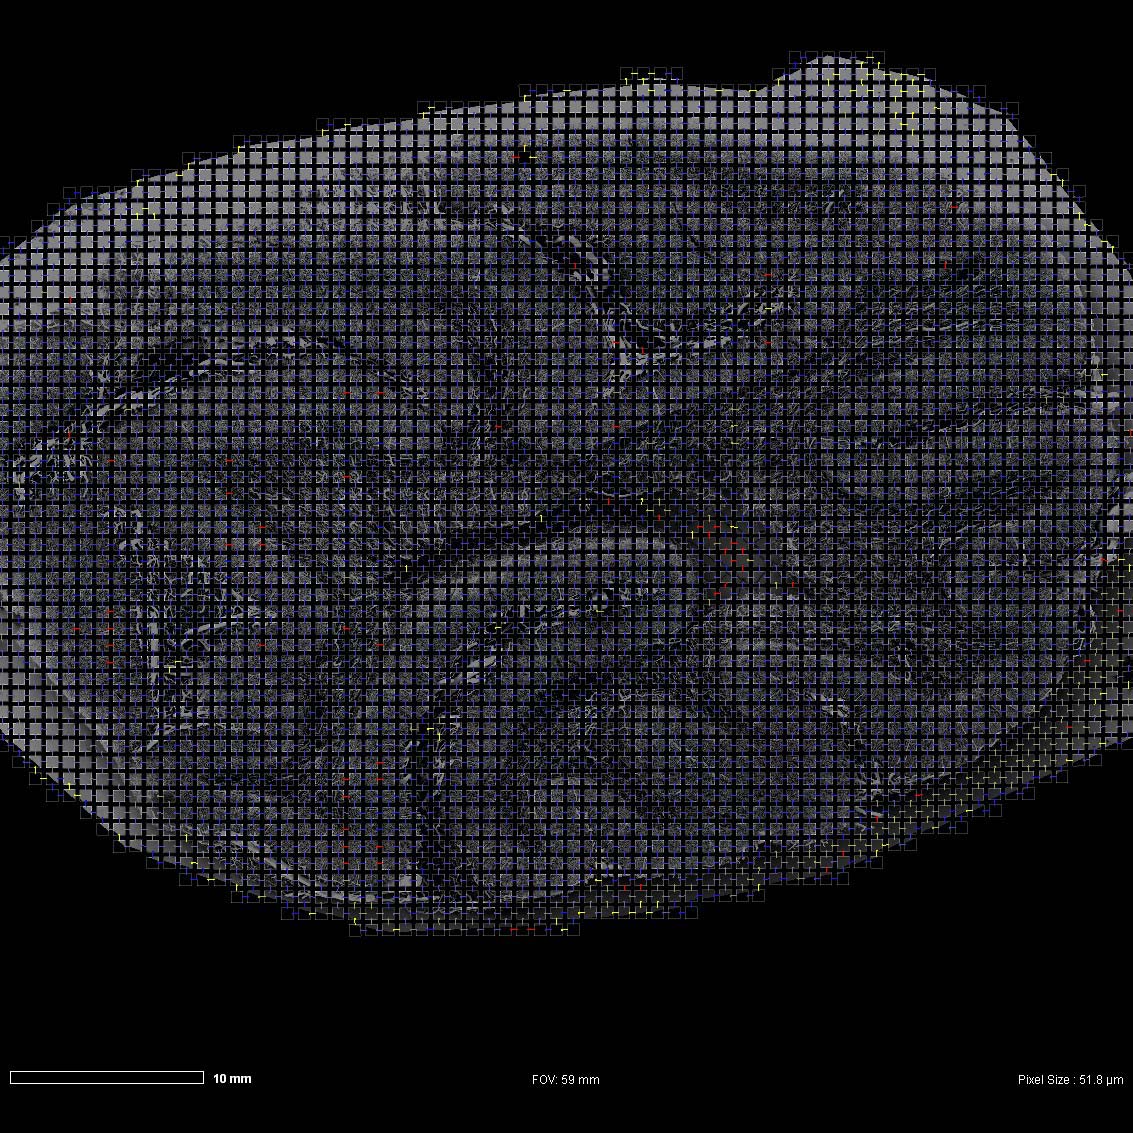 自动拍摄的猴脑样品的大图，显示大脑血管。图像使用Atlas 5 Array Tomography采集。观察视野：3700 mm。